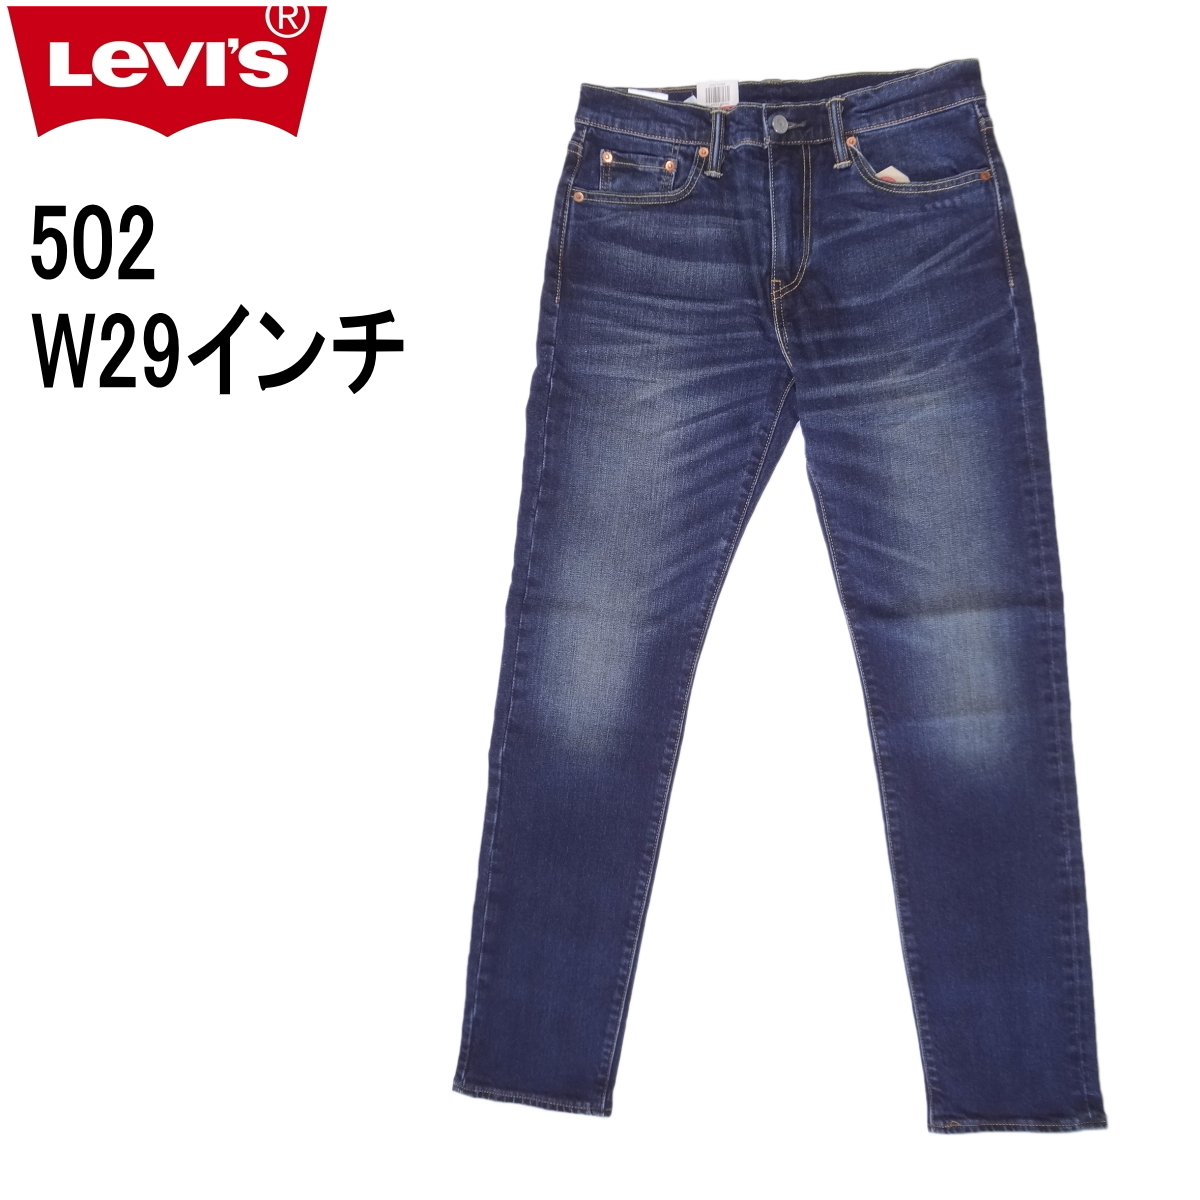 リーバイス 502 ストレッチデニム ジーンズ LEVI'S W29インチ ダークインディゴ ブルー